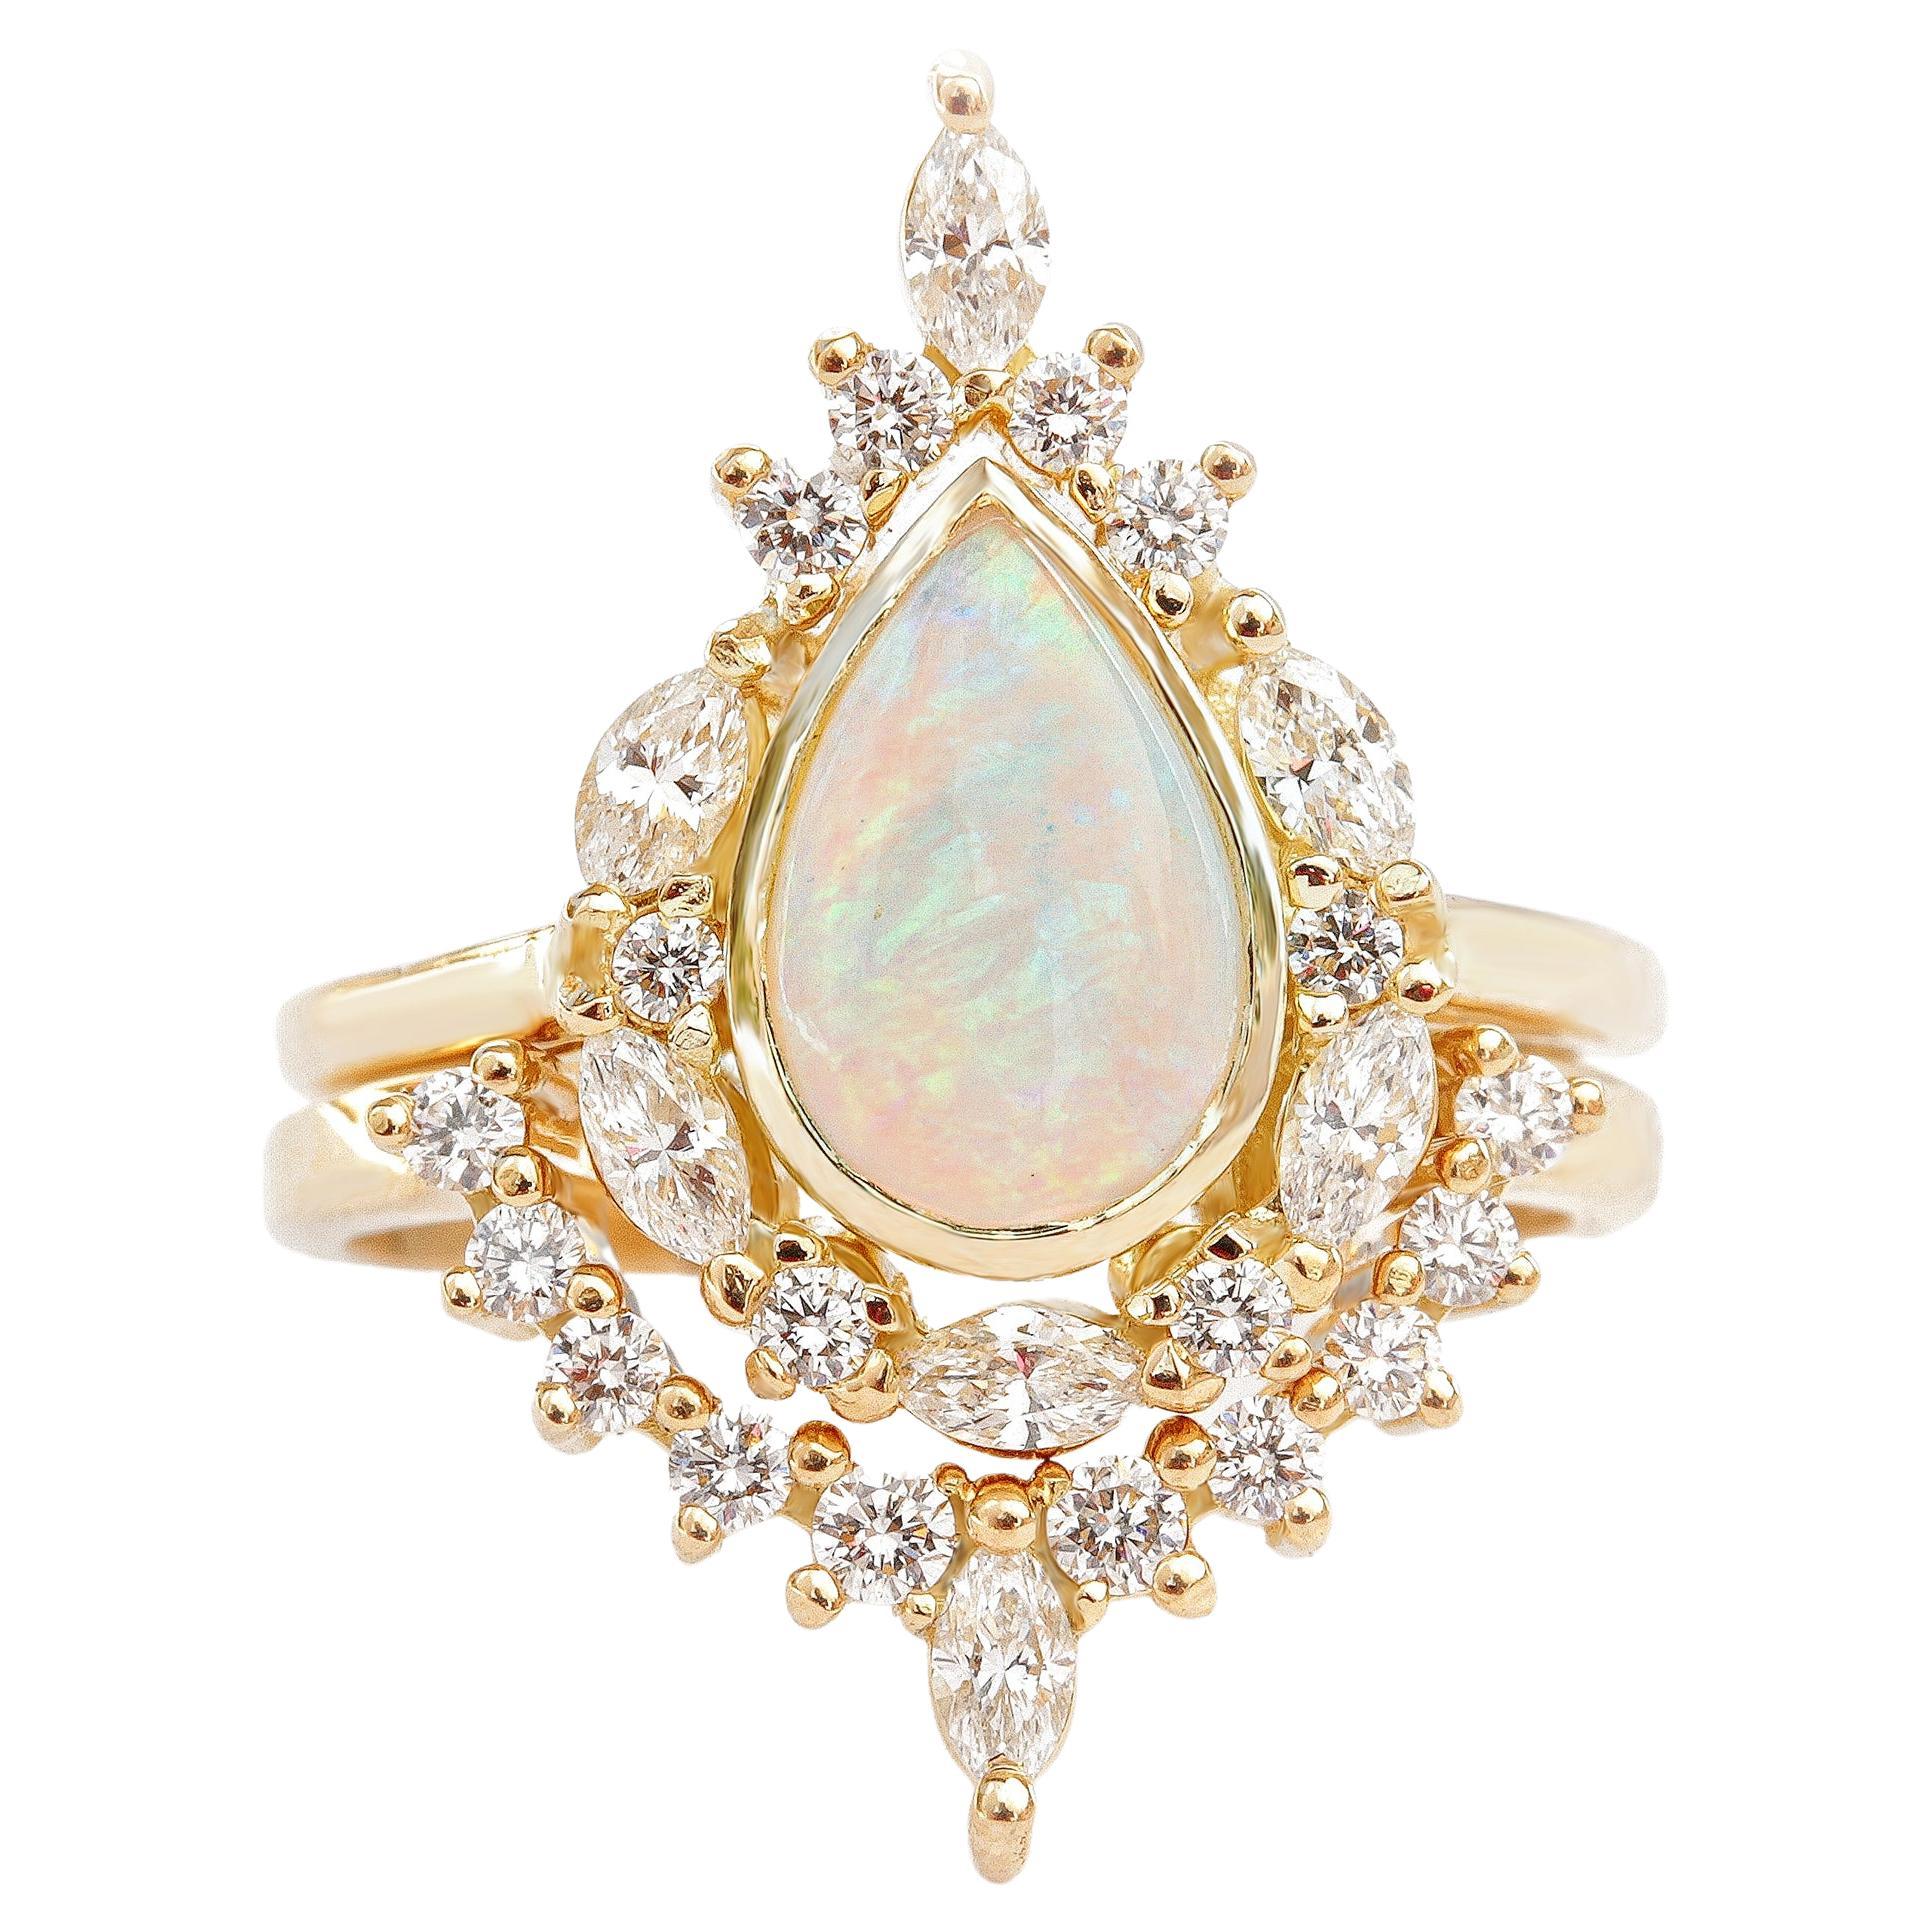 Einzigartiger Verlobungsring mit birnenförmigem Opal, passender Diamantring, zwei Ringe gefasst - Eva